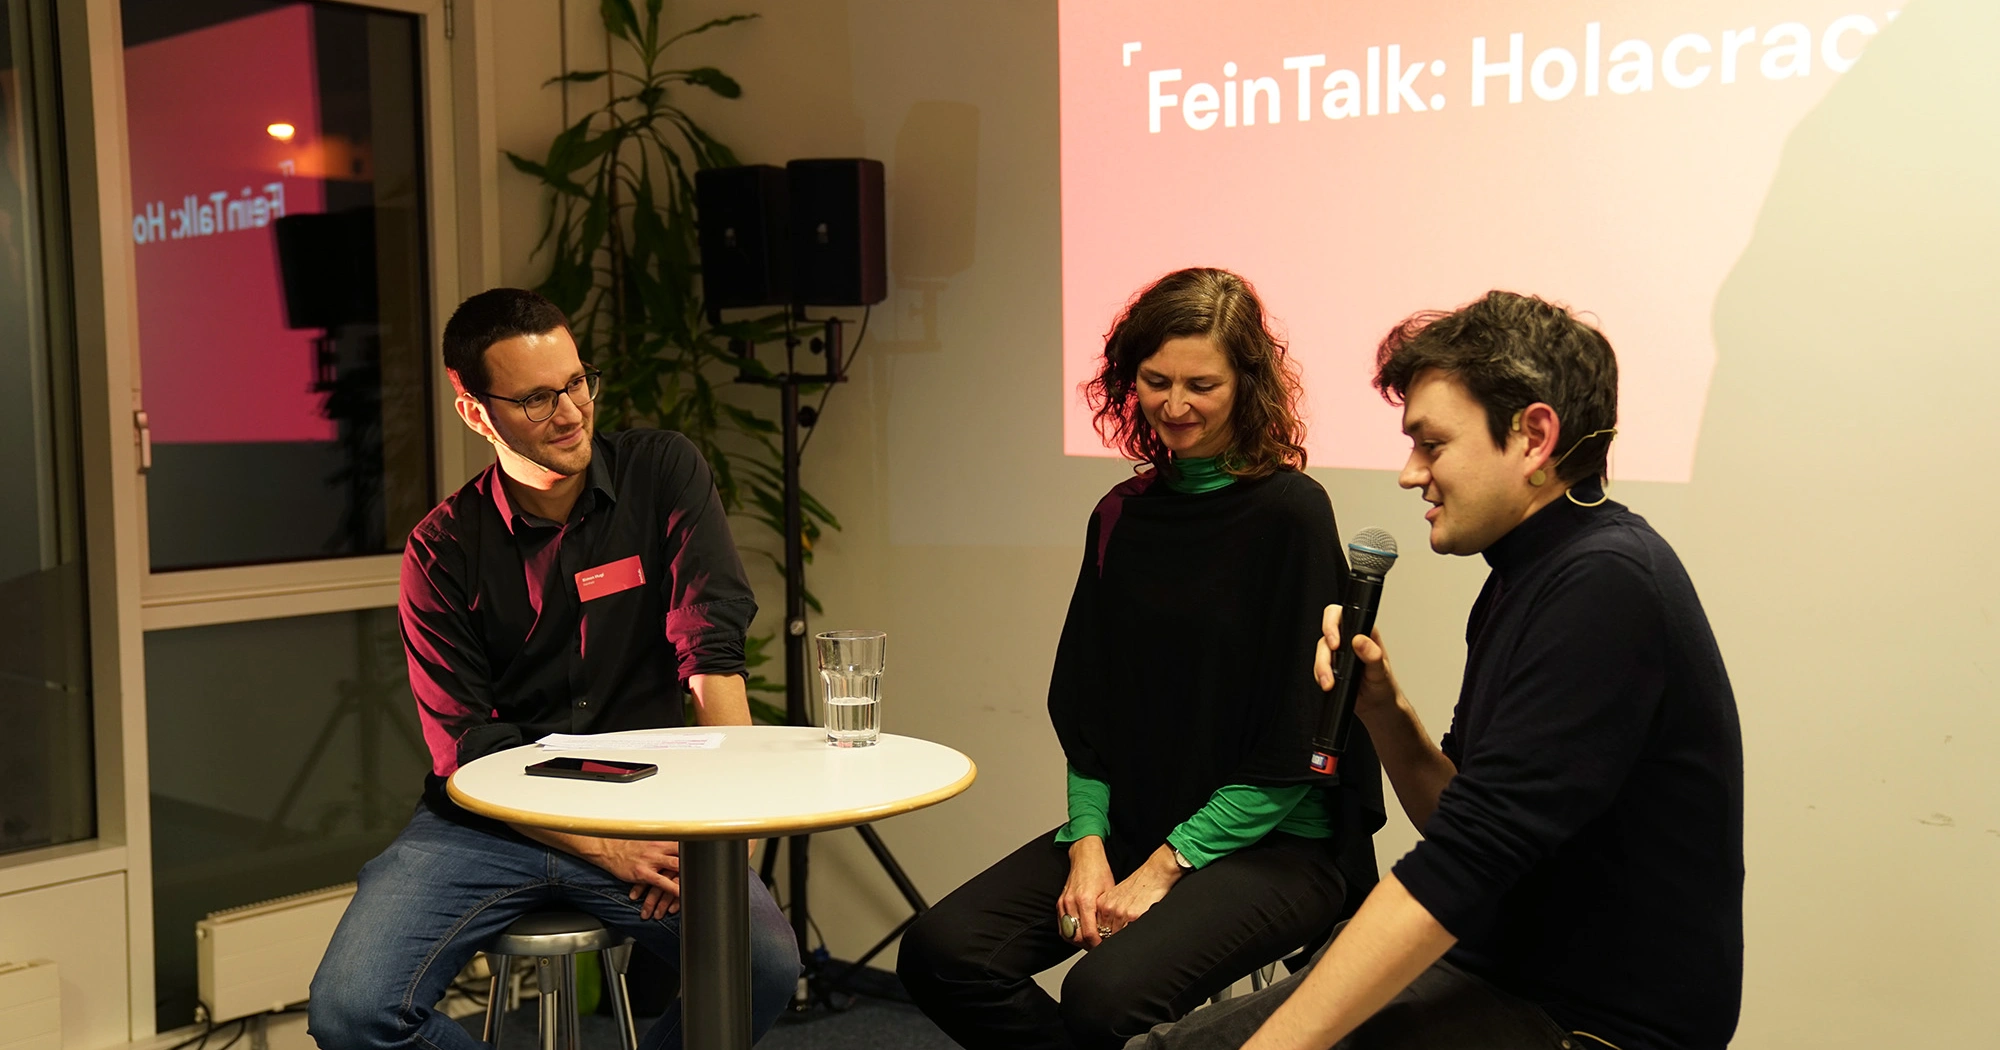 Simon Hugi im Gespräch mit unseren Gästen Regula Reidhaar und Nils Jocher über Holacracy.